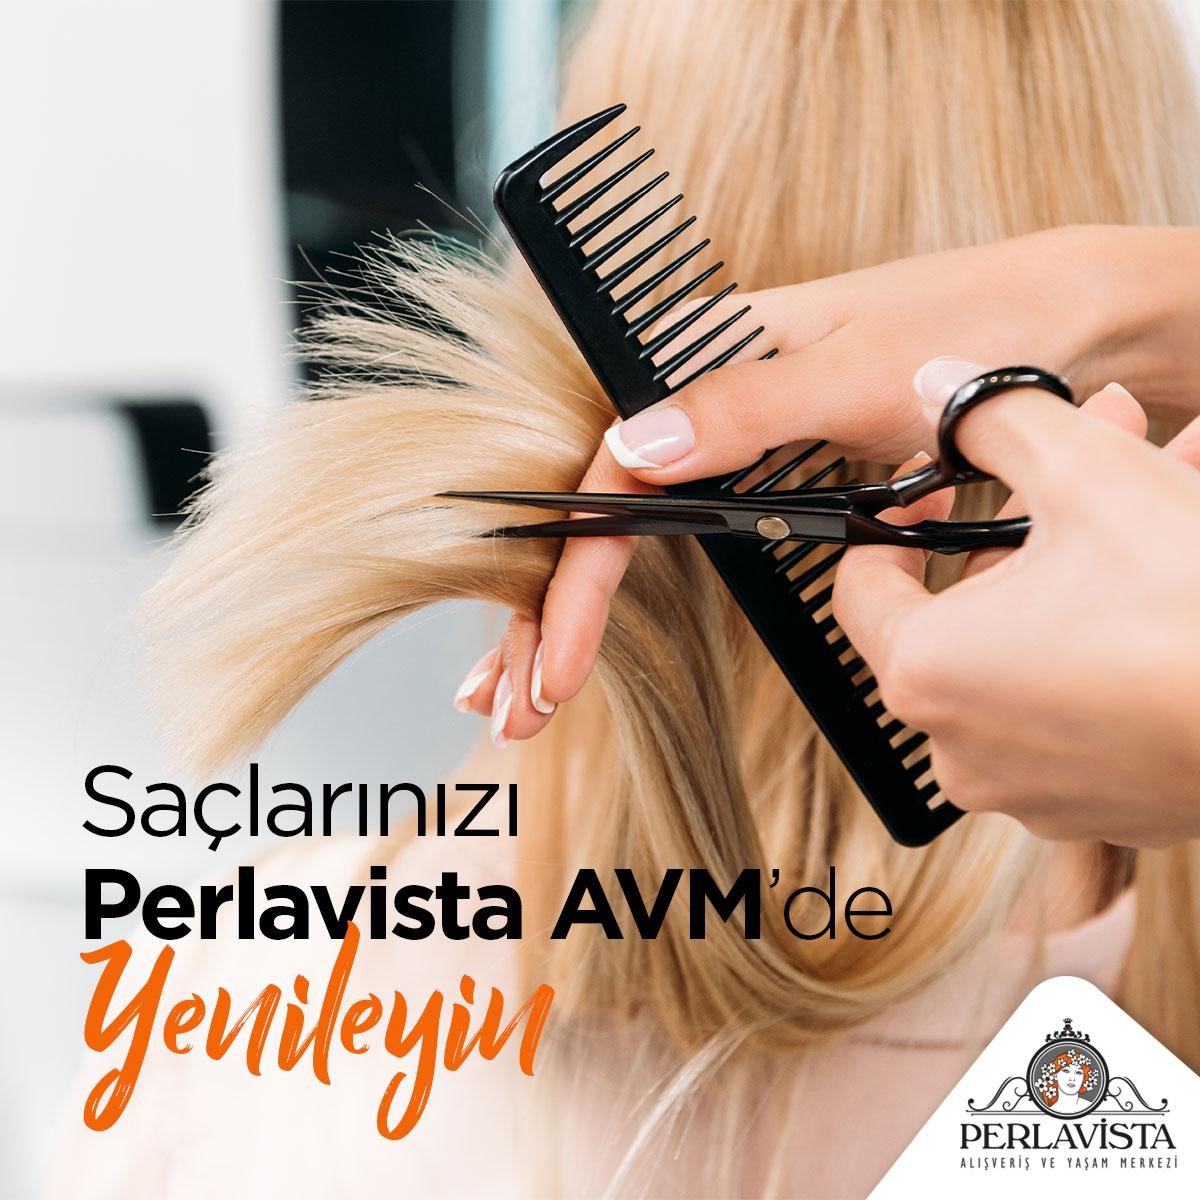 Uzun zamandır yenilemek istediğiniz saçlarınızı bugün Perlavista AVM Diva Kuaför’de yenilemeye ne dersiniz? 🤩💇🏻

#kuaför #saçbakımı #divakuaför #perlavistaavm